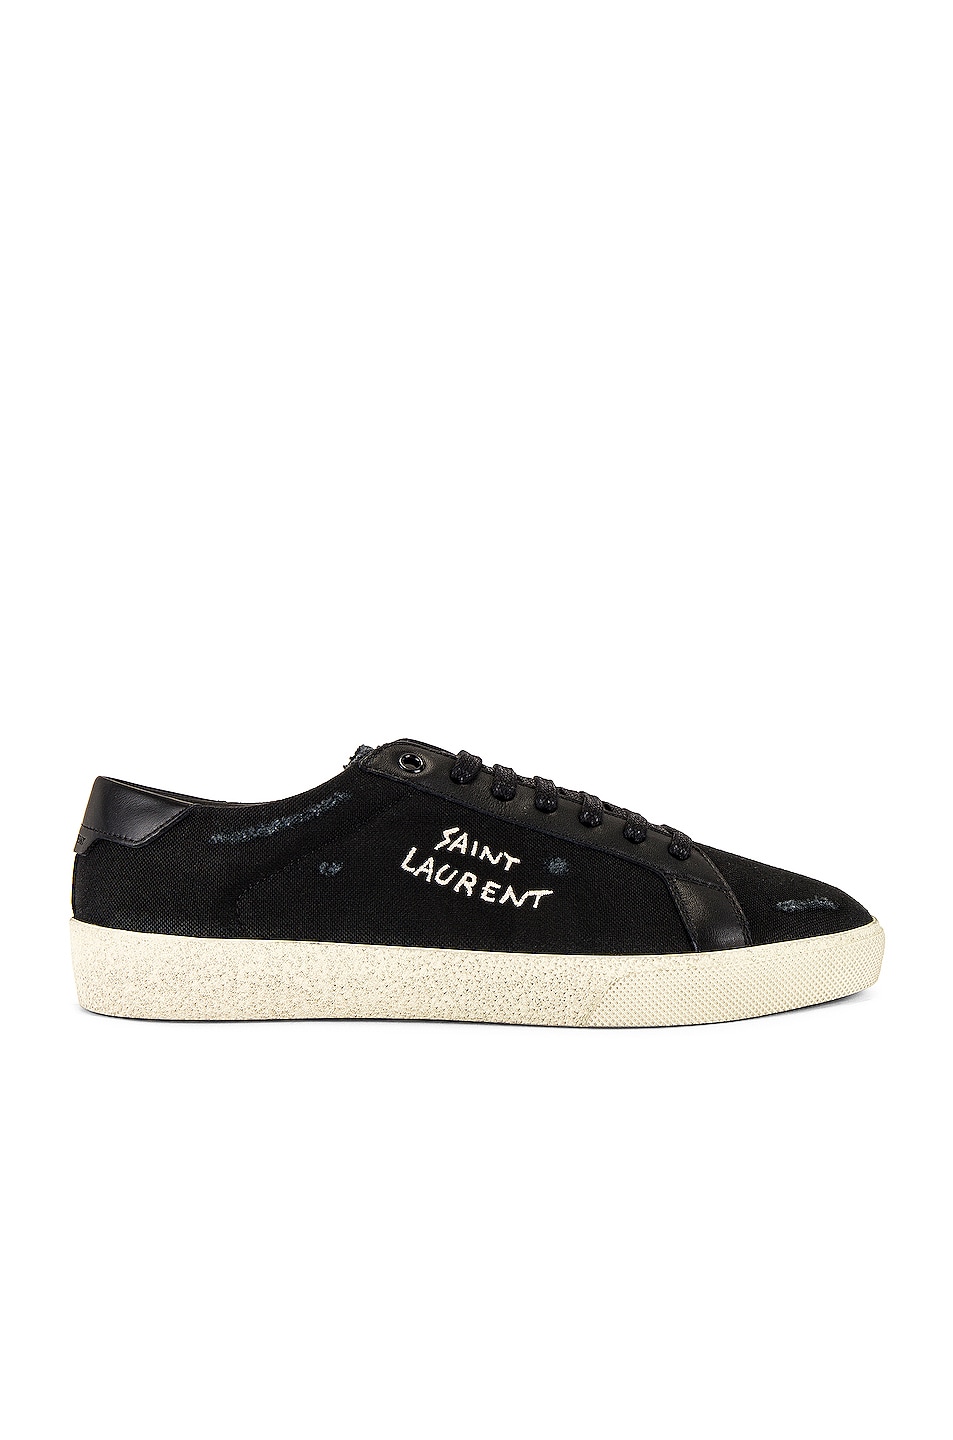 Saint Laurent SL/06 Signa Low Top Sneaker in Black